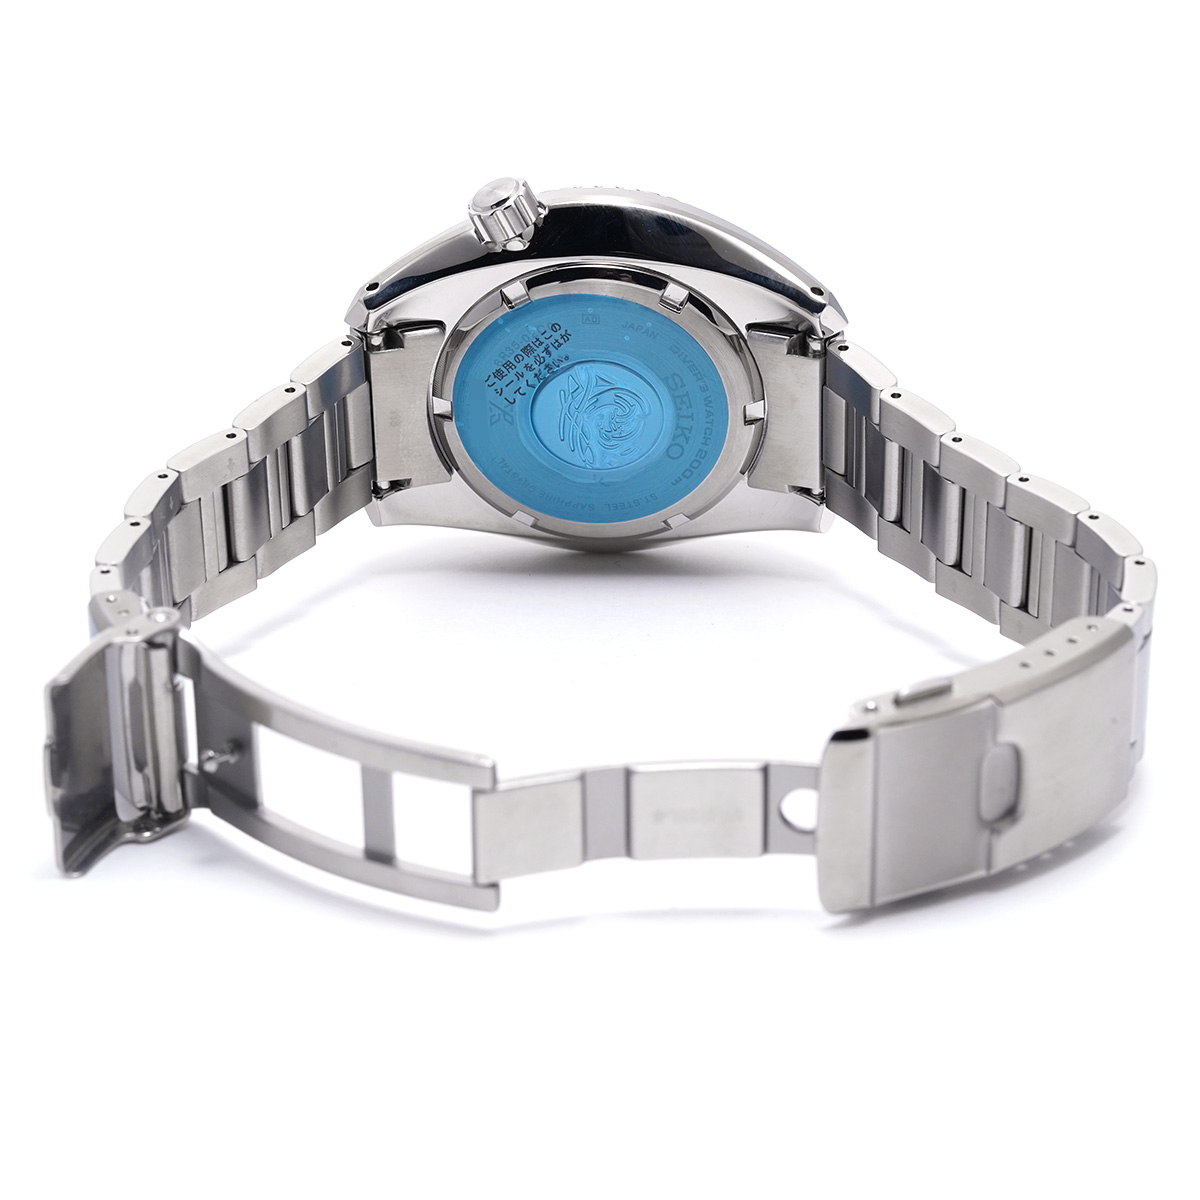 セイコー / SEIKO プロスペックス メカニカル ダイバー スキューバ SBDC175 ブルー メンズ 時計 【中古】【wristwatch】